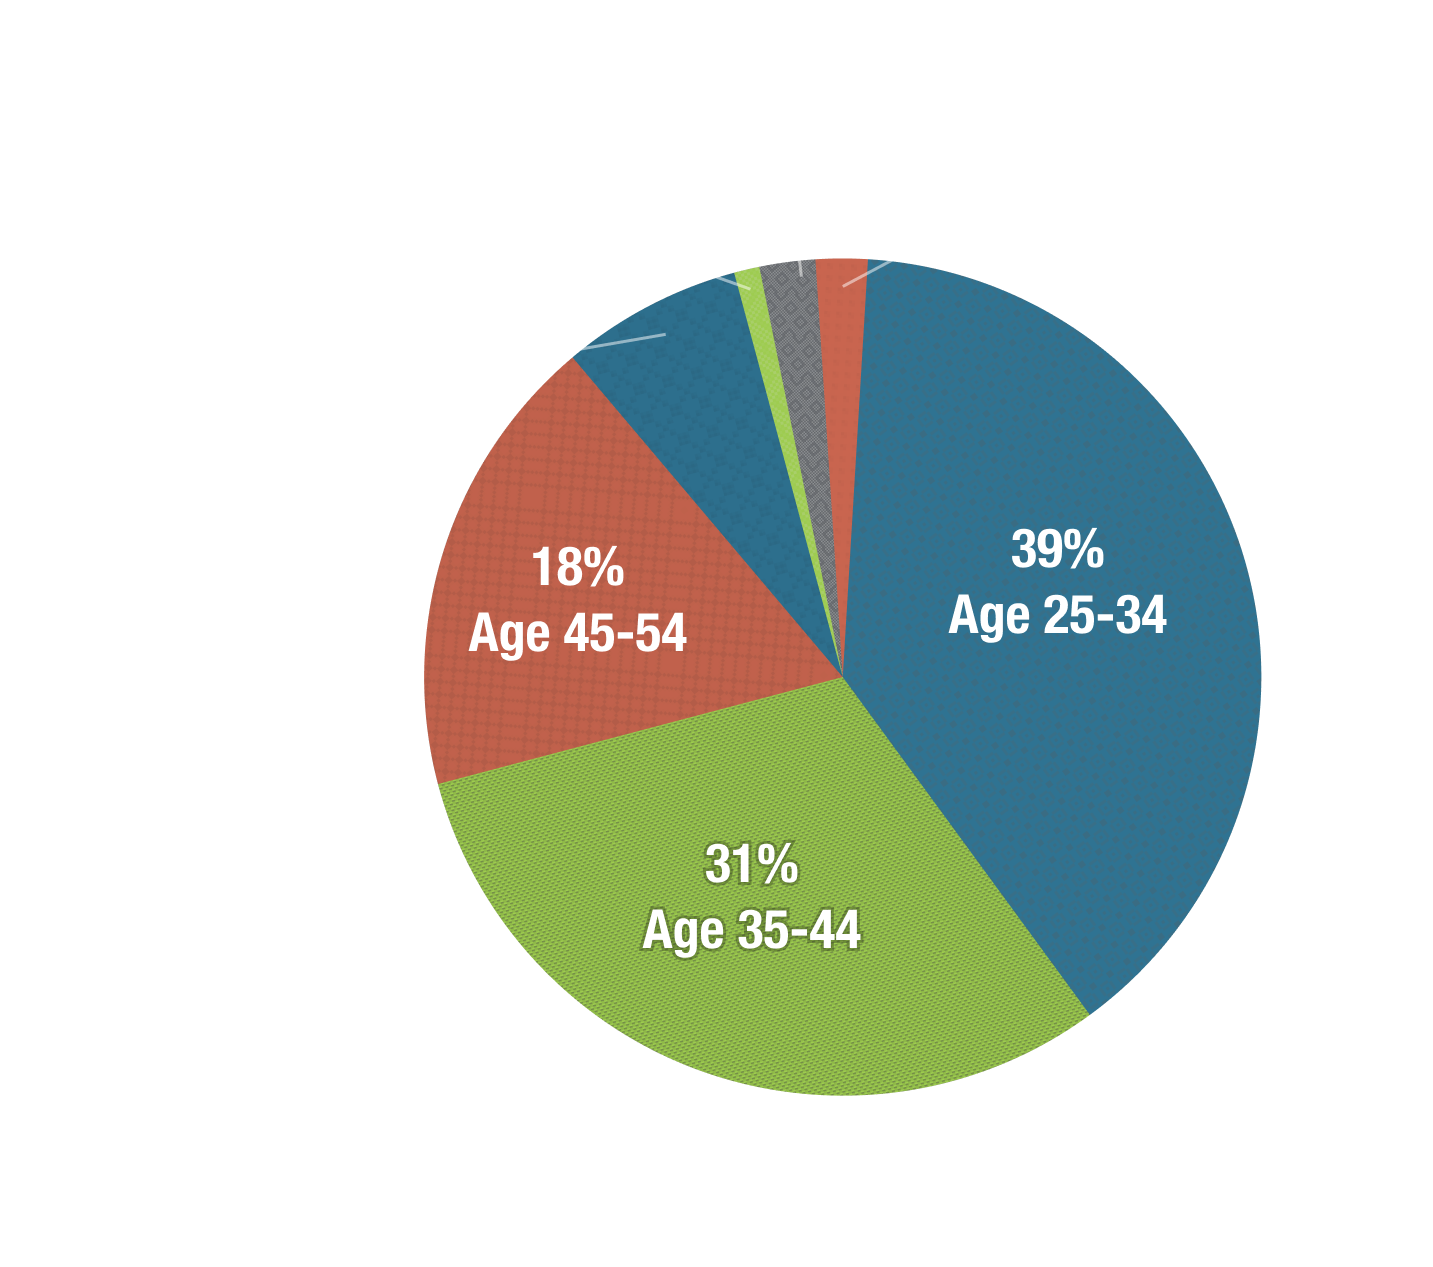 Age 18-24 2%, Age 25-34 39%, Age 35-44 31%, Age 45-54 18%, Age 55-64 7%, Age 65-74 1%, No response 3%